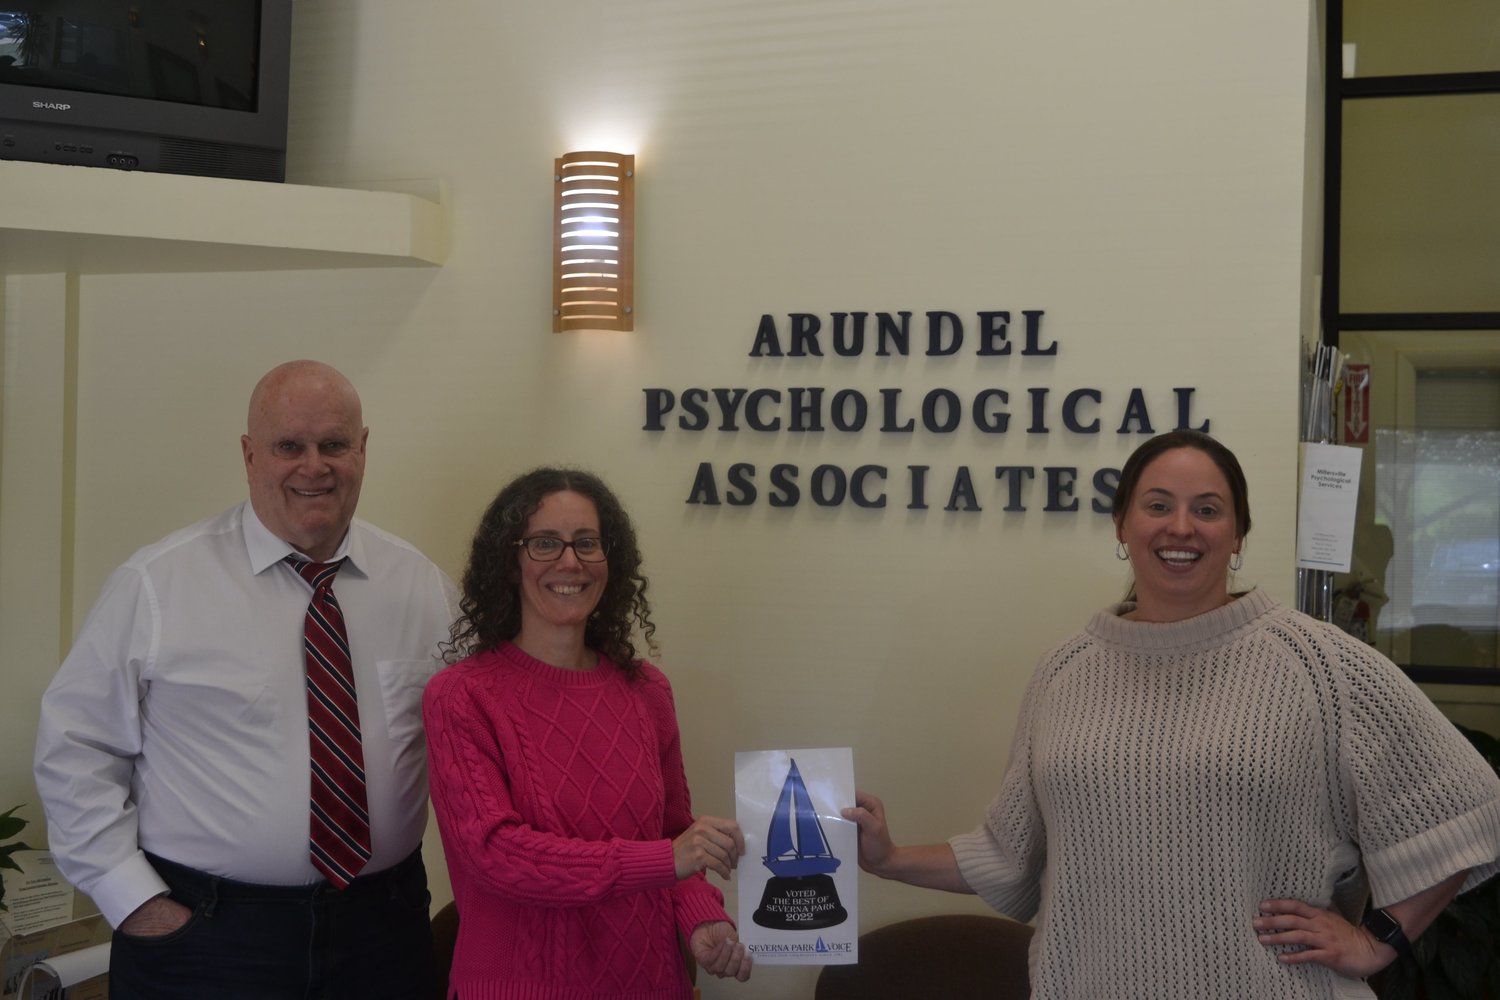 Arundel Psychological Associates won Best Mental Health Care.